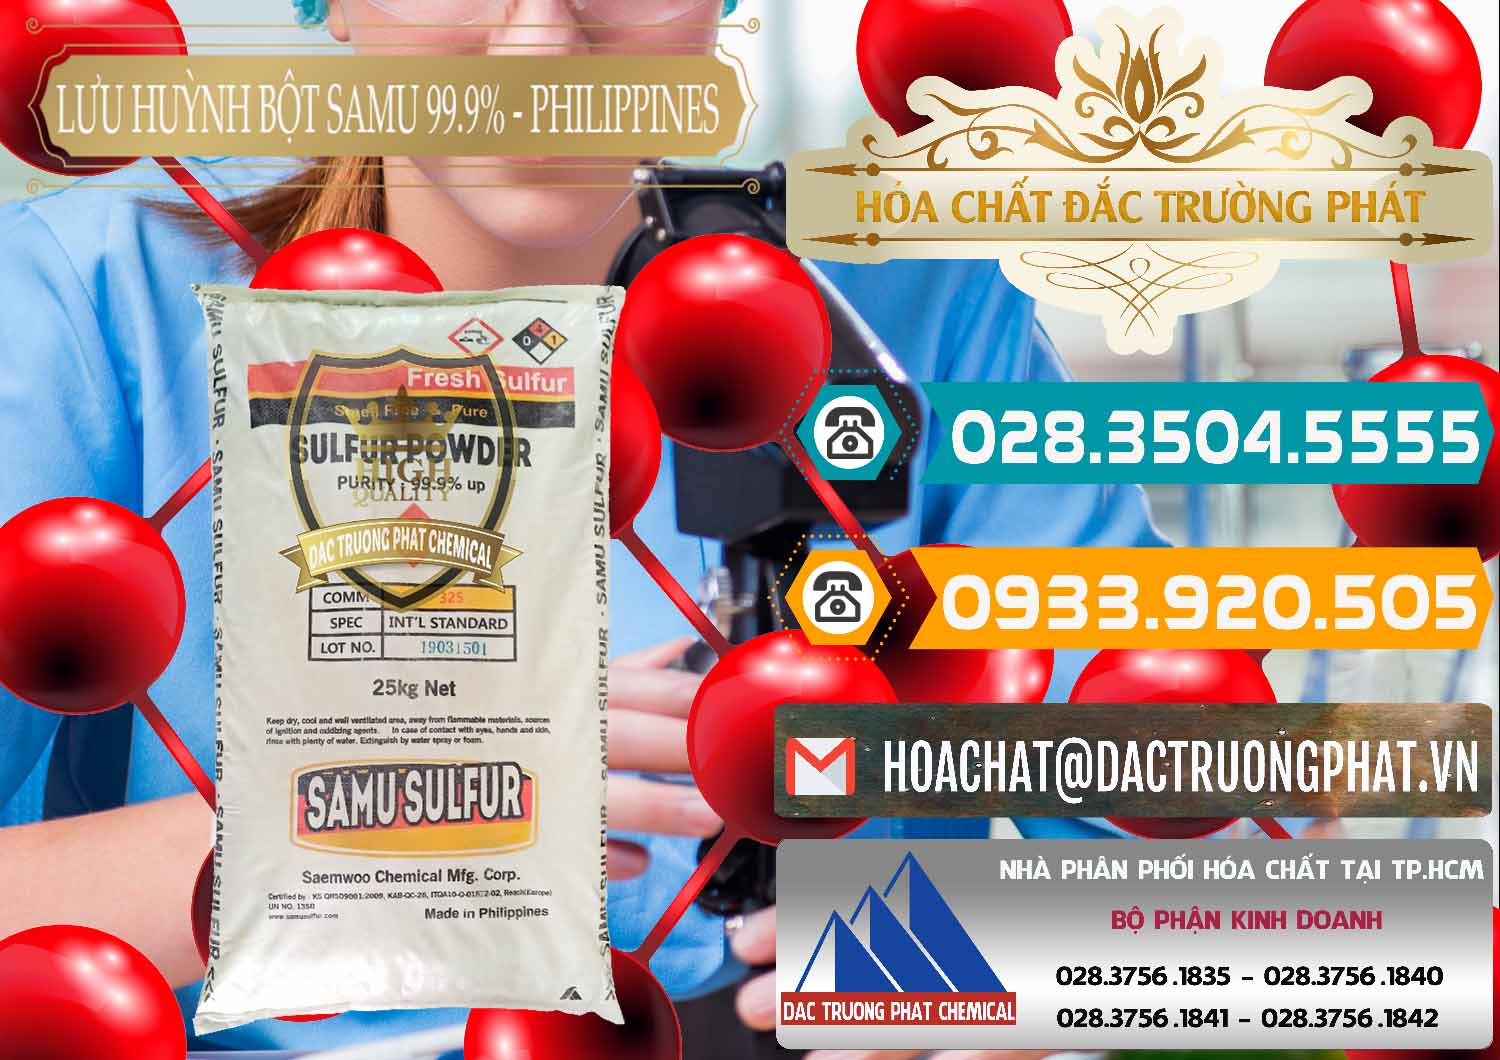 Công ty nhập khẩu và bán Lưu huỳnh Bột - Sulfur Powder Samu Philippines - 0201 - Công ty chuyên cung cấp và kinh doanh hóa chất tại TP.HCM - congtyhoachat.vn